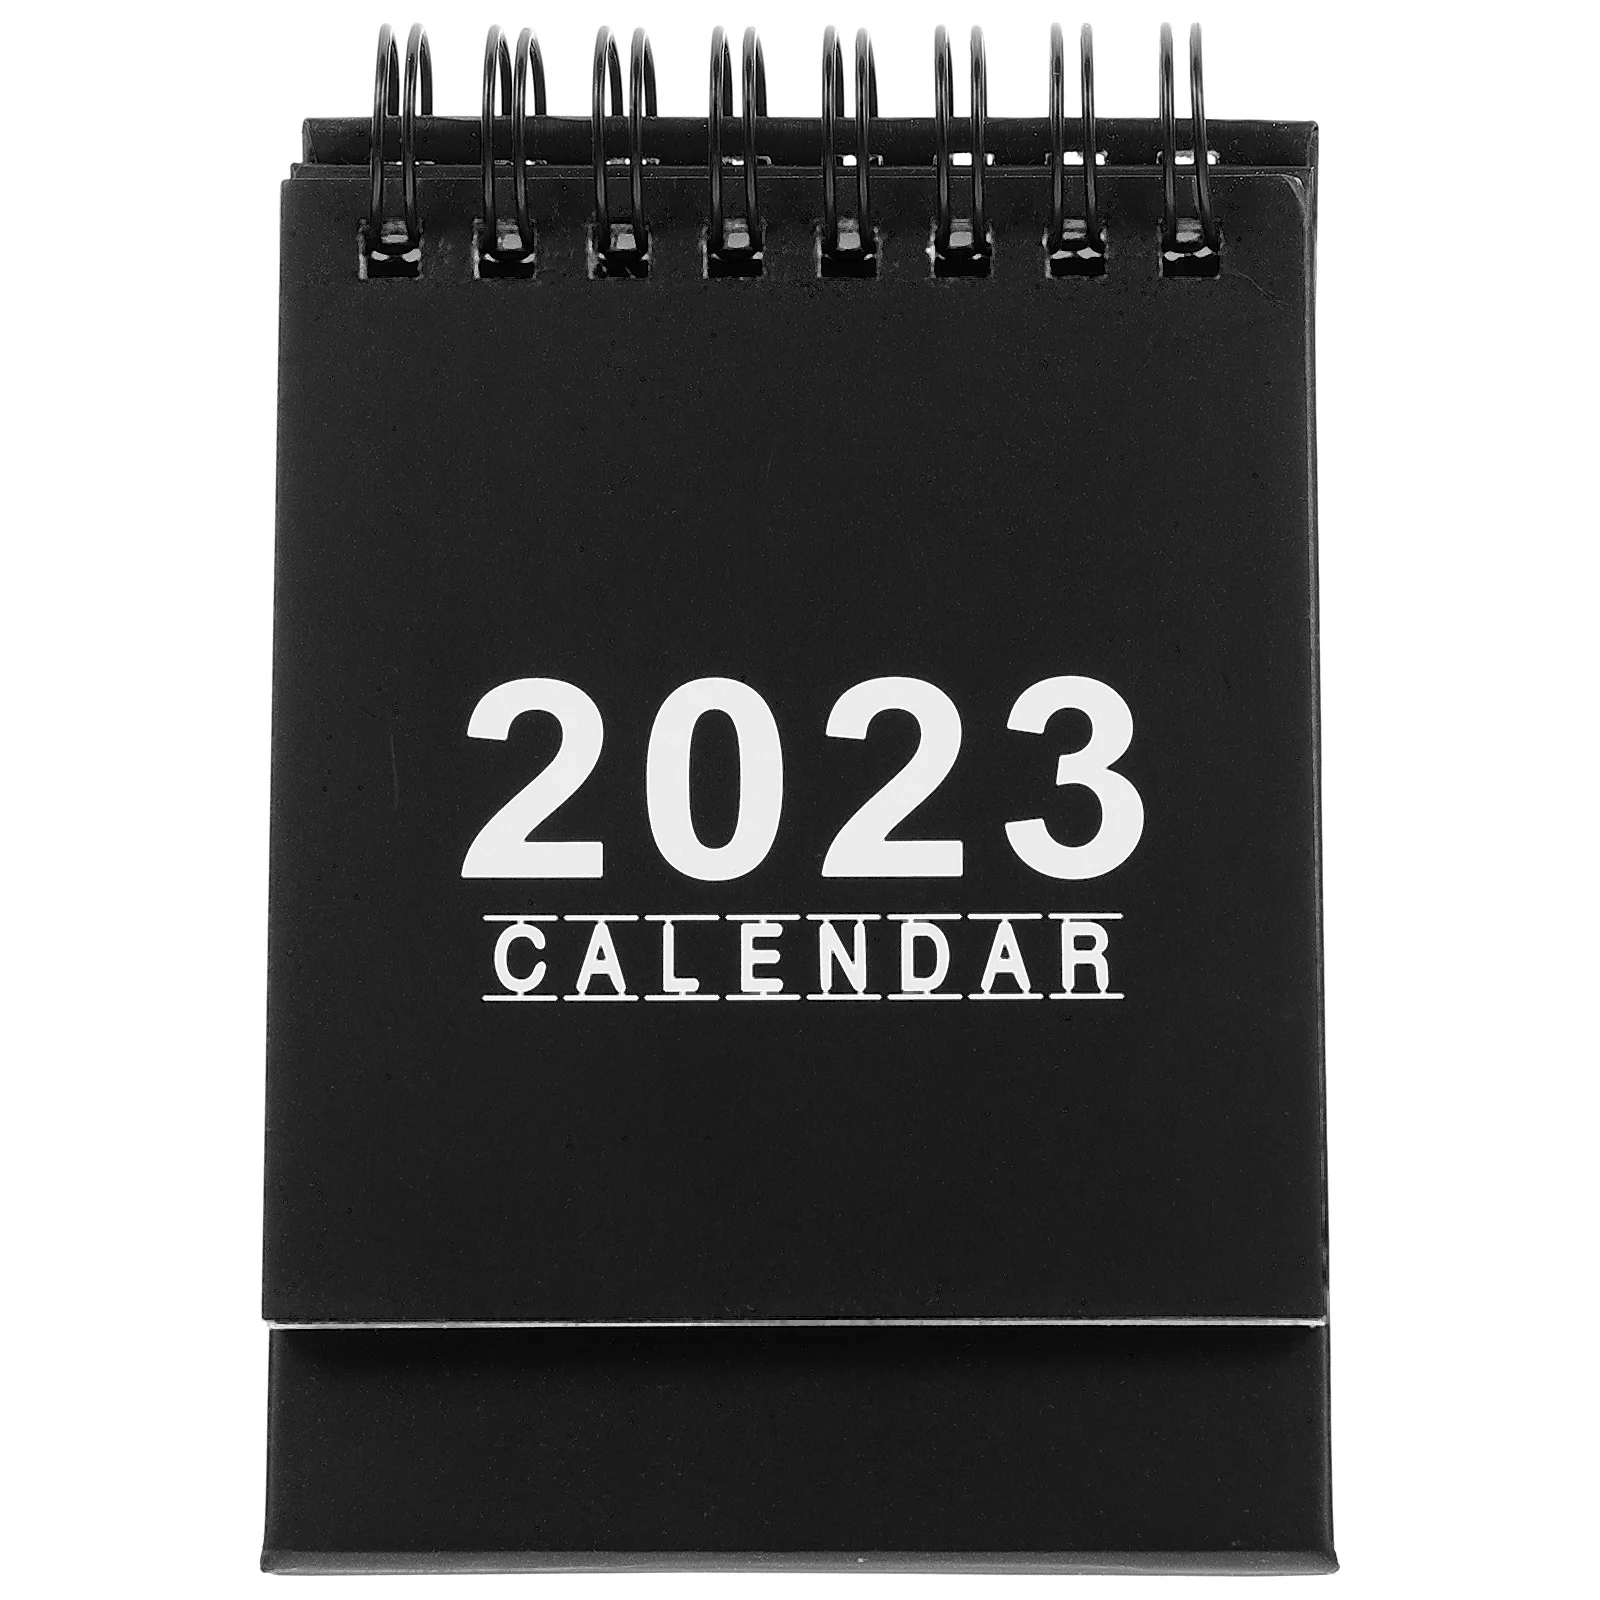 Календарь для настольного компьютера, ежедневный календарь, 2023